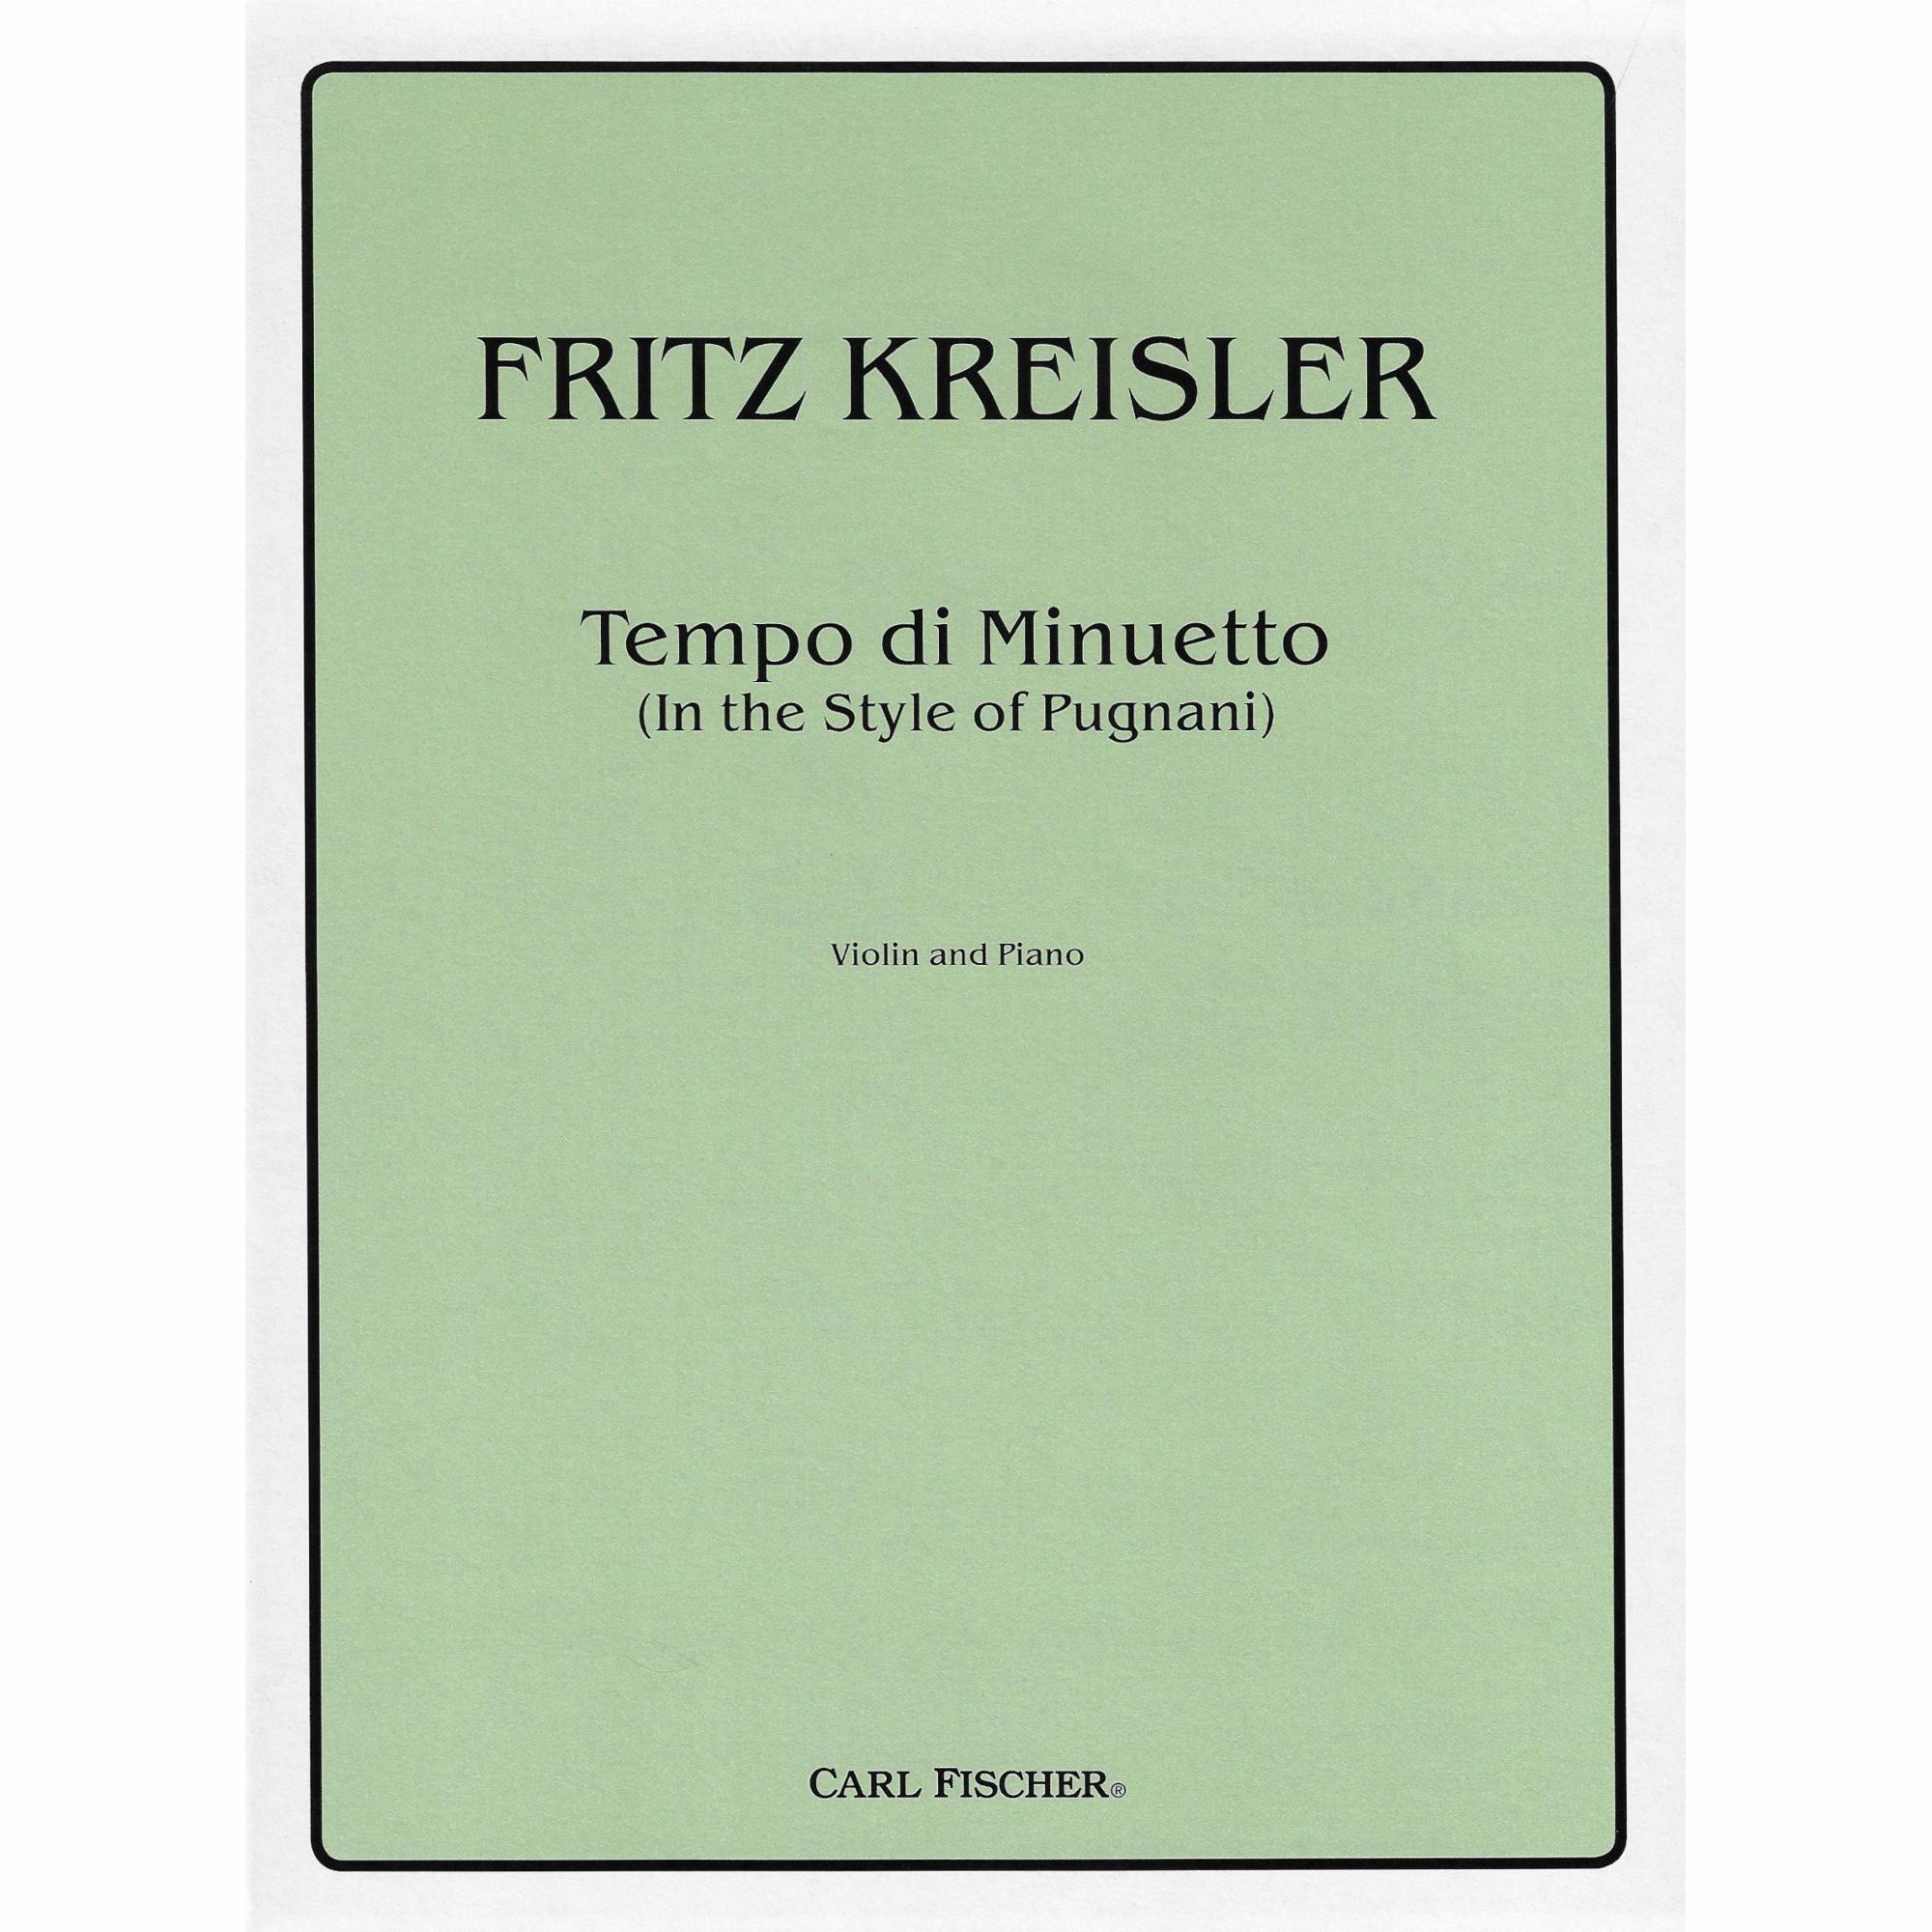 Kreisler -- Tempo di Minuetto for Violin and Piano